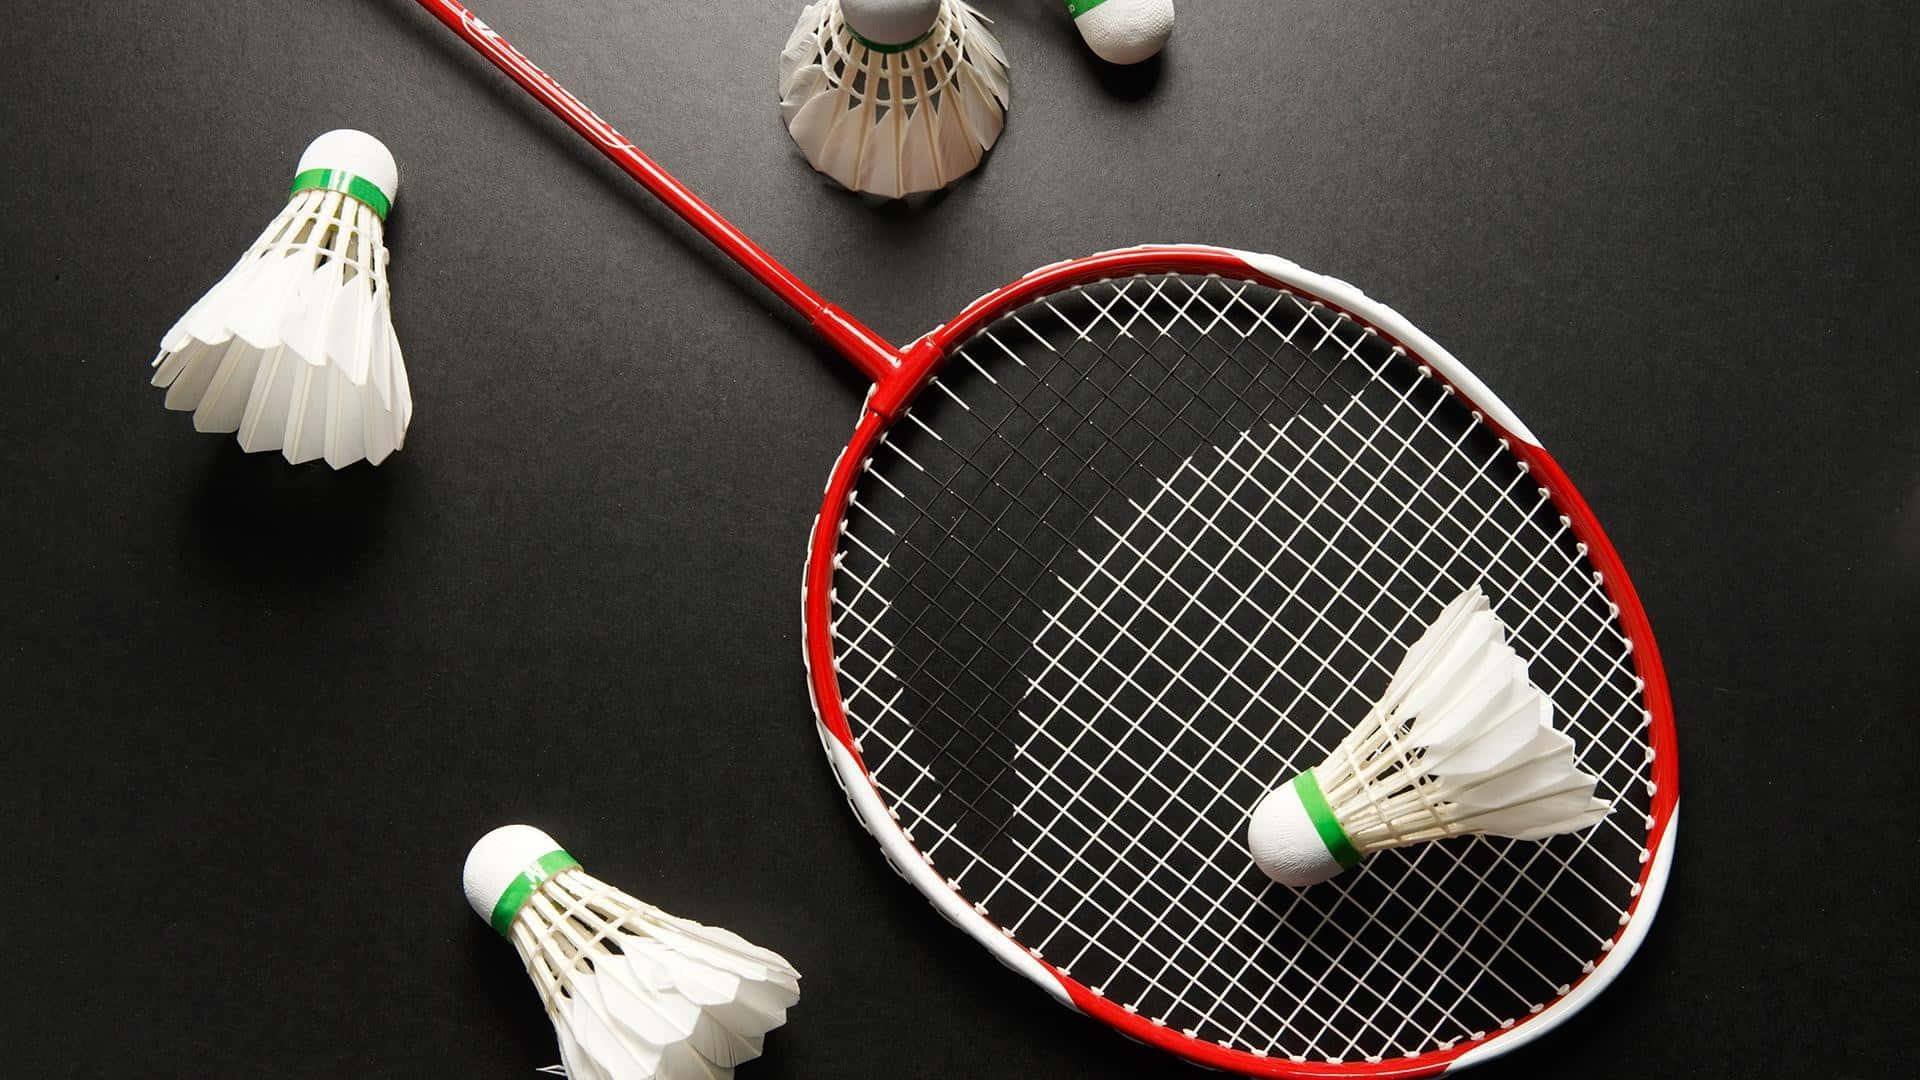 Fåut Det Bästa Av Ditt Spel Med Best Badminton